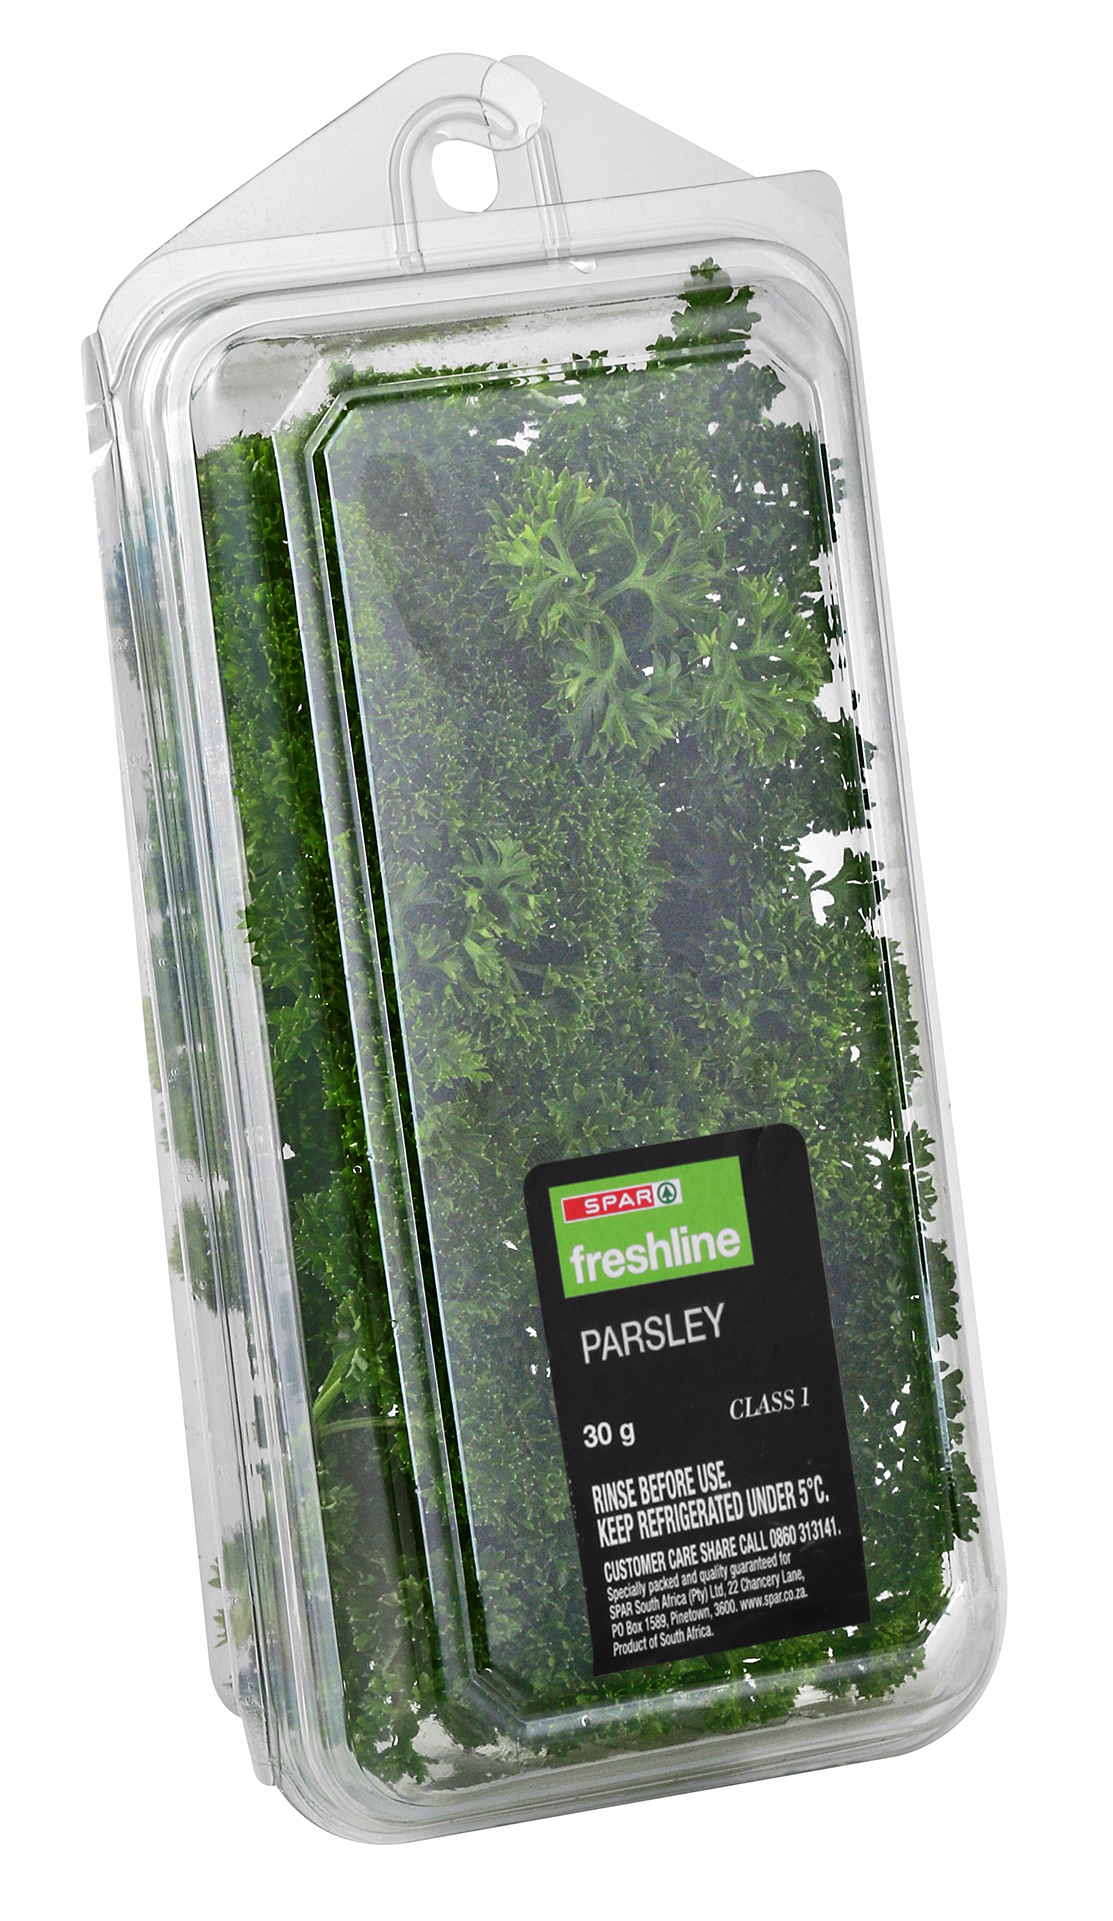 freshline parsley